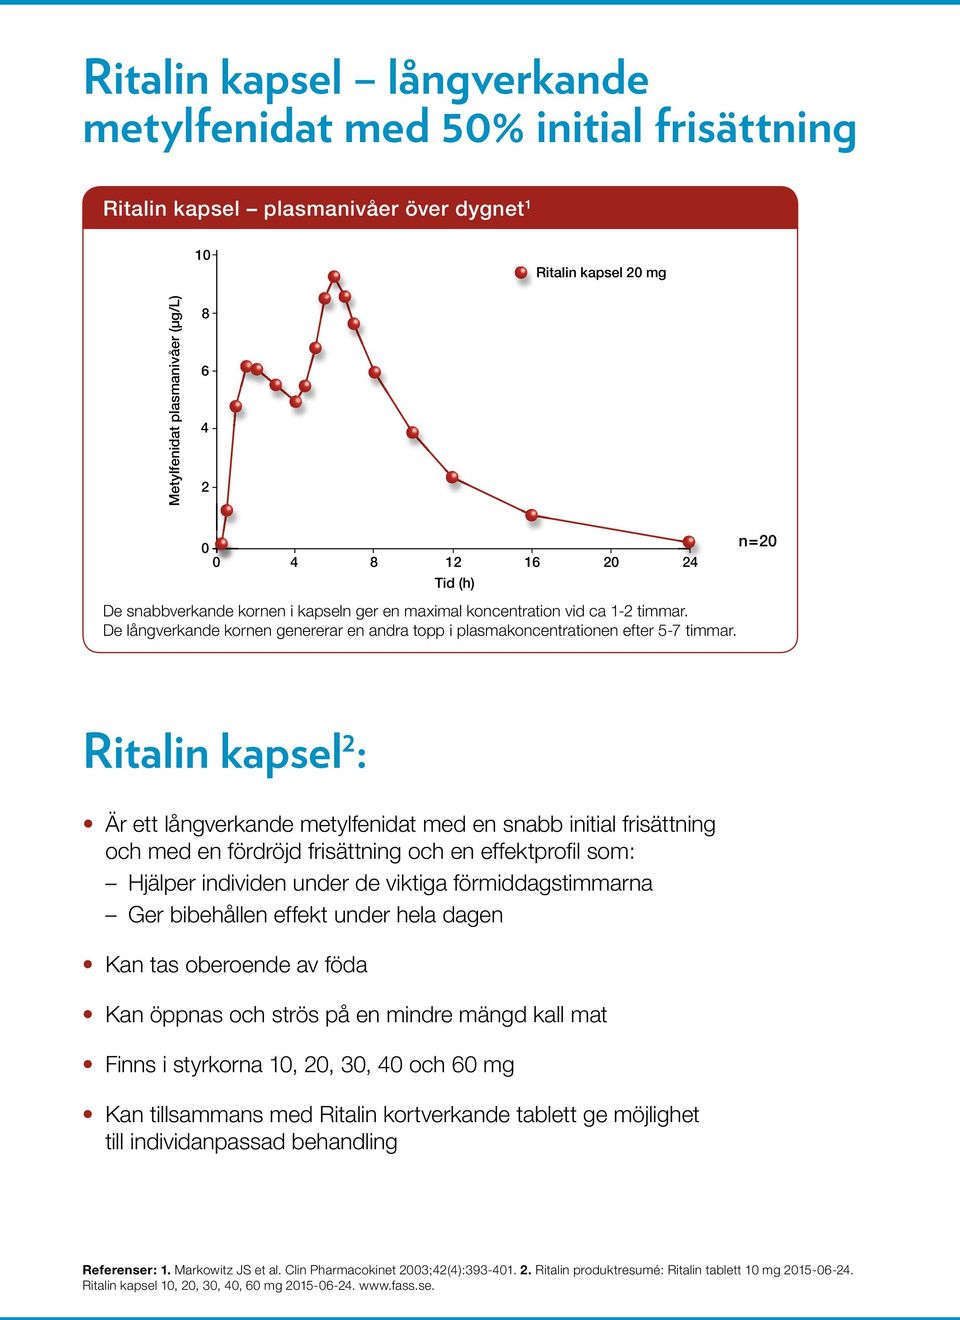 Ritalin kapsel 2 : Är ett långverkande metylfenidat med en snabb initial frisättning och med en fördröjd frisättning och en effektprofil som: Hjälper individen under de viktiga förmiddagstimmarna Ger